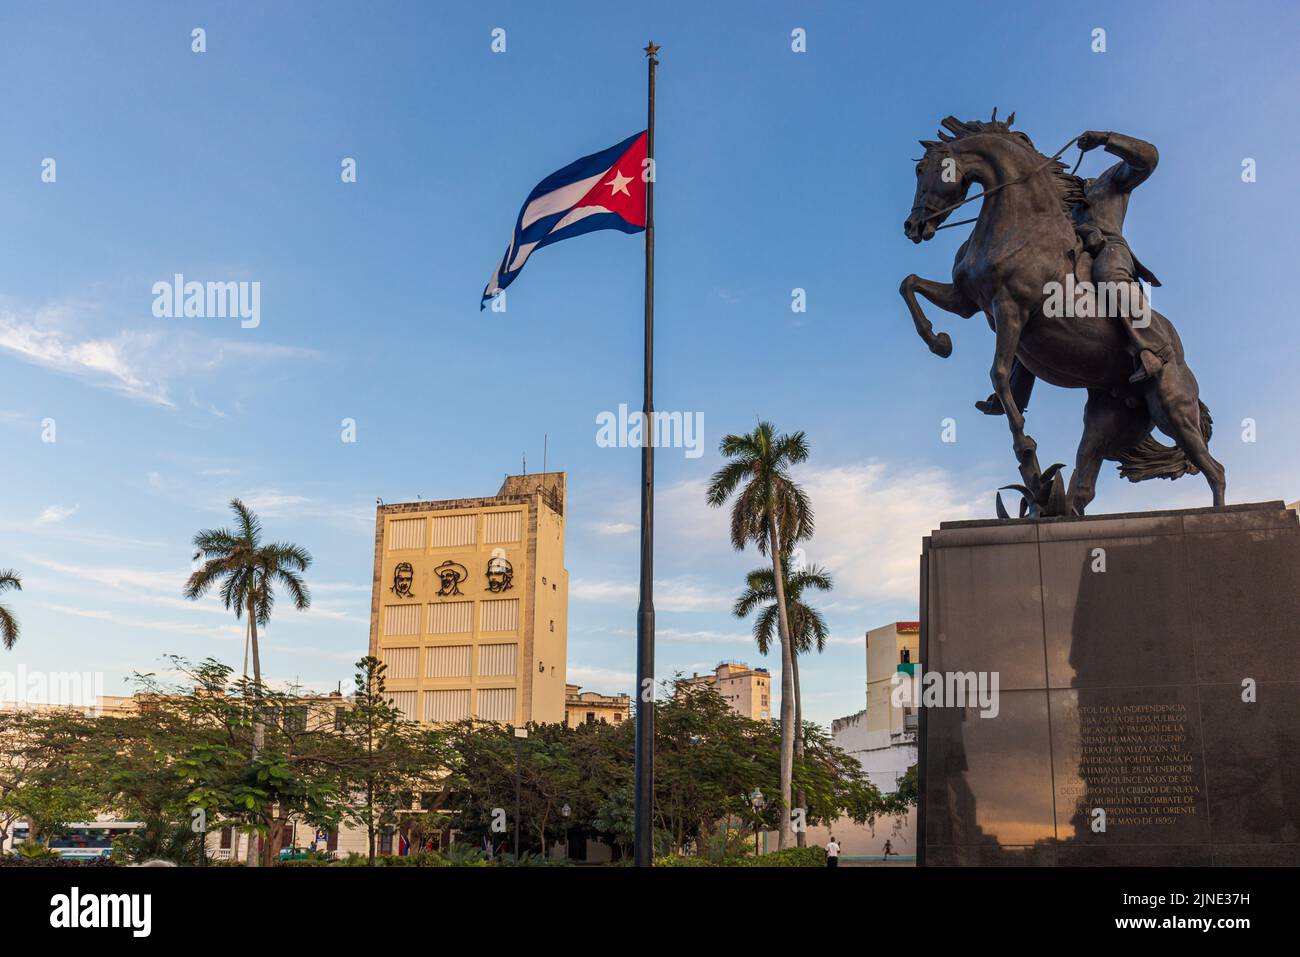 L'AVANA CUBA. 2 GENNAIO: Vista della statua di Jose Marti sul suo cavallo, nella Plaza 13 de Marzo il 2 gennaio 2021 a l'Avana, Cuba Foto Stock